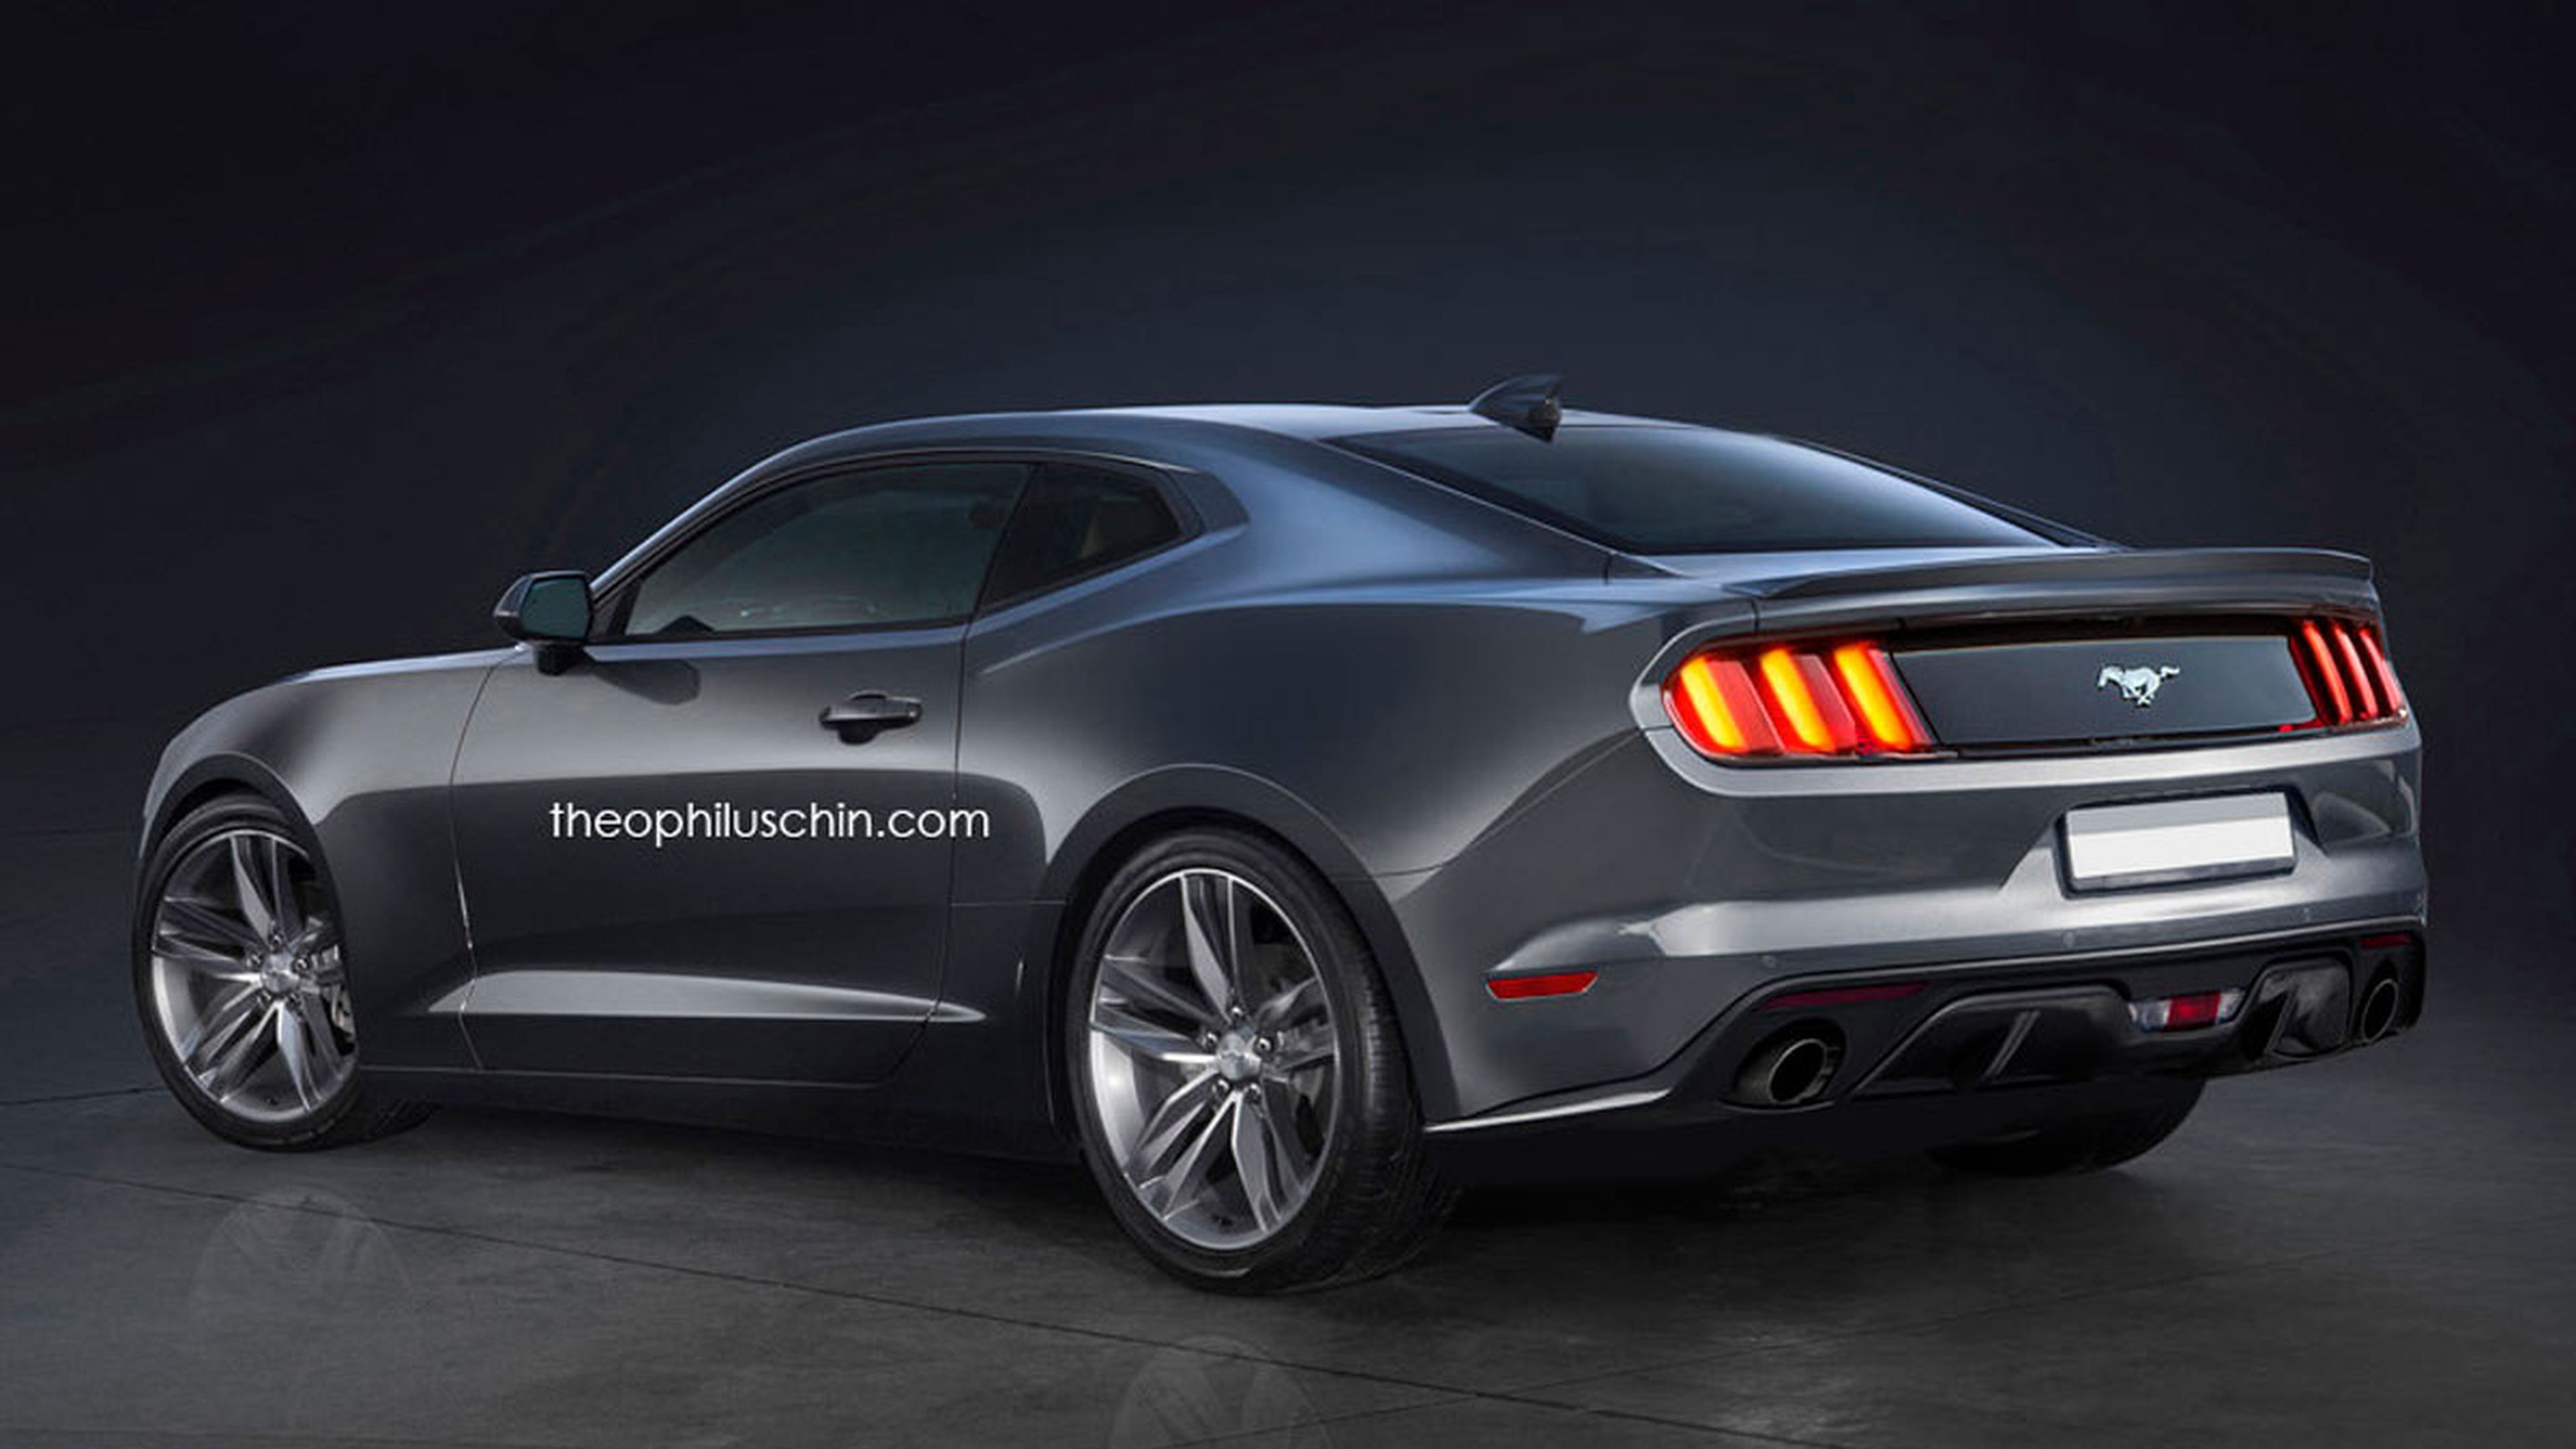 Challenger+Mustang+Camaro: el muscle car perfecto